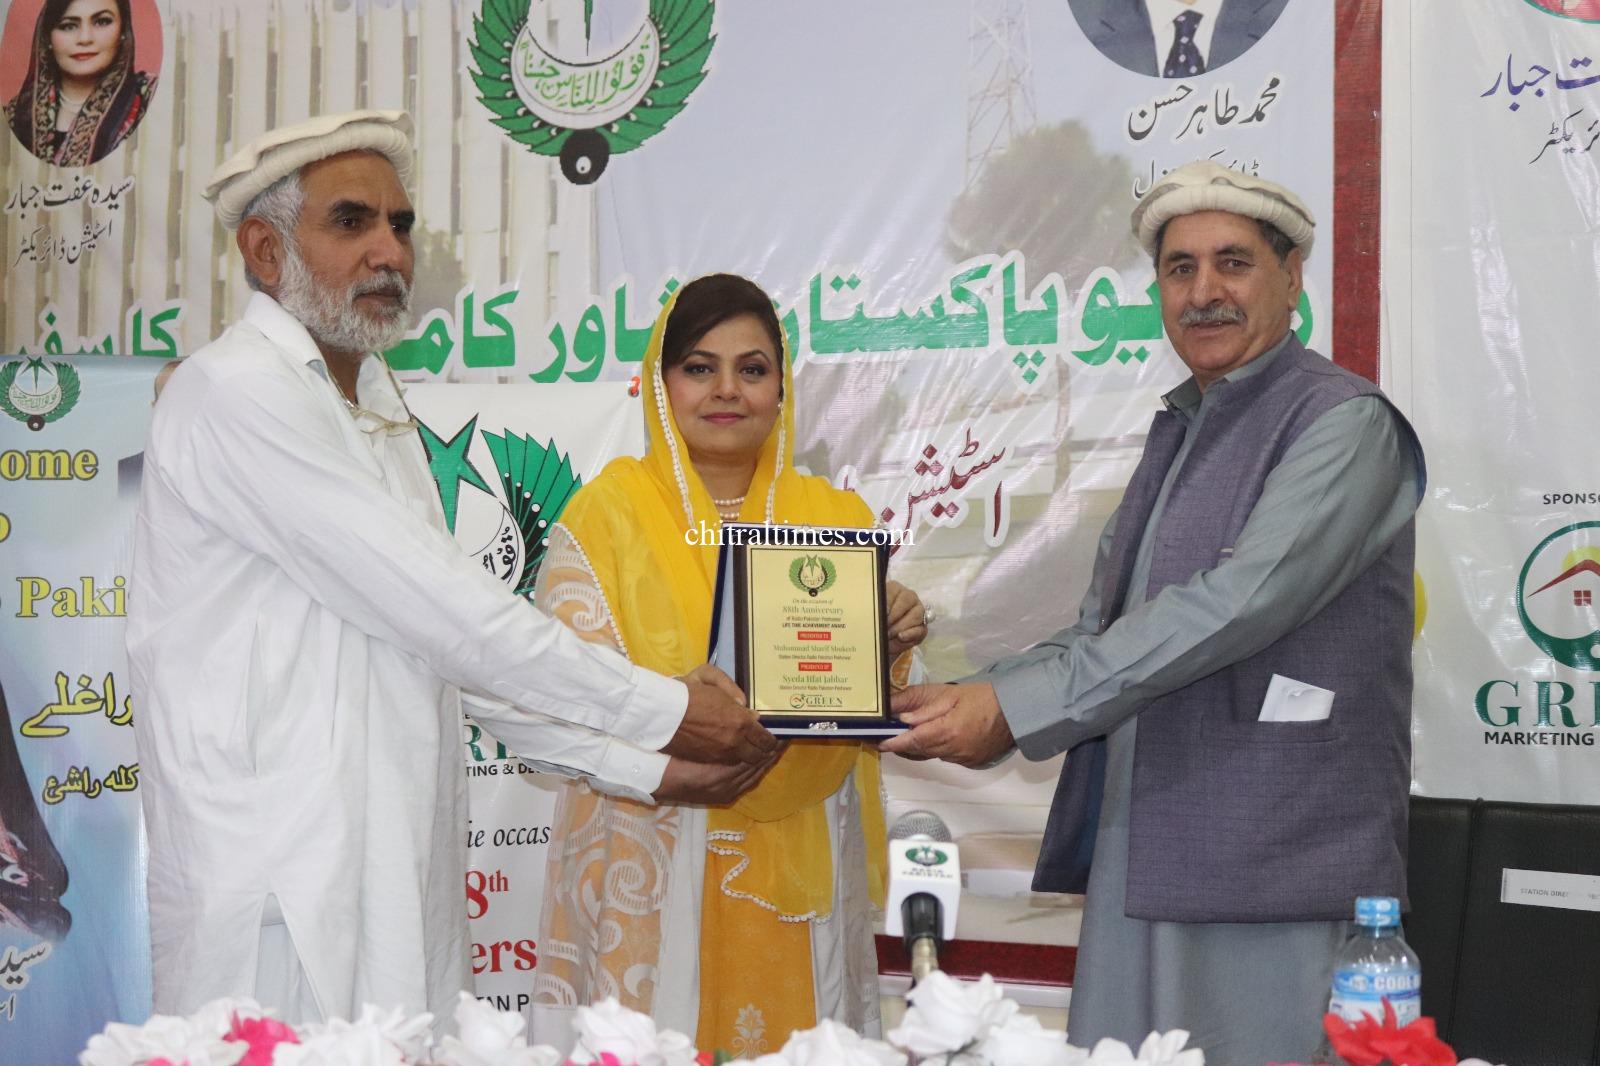 chitraltimes radio pakistan peshawar program khowar award 1